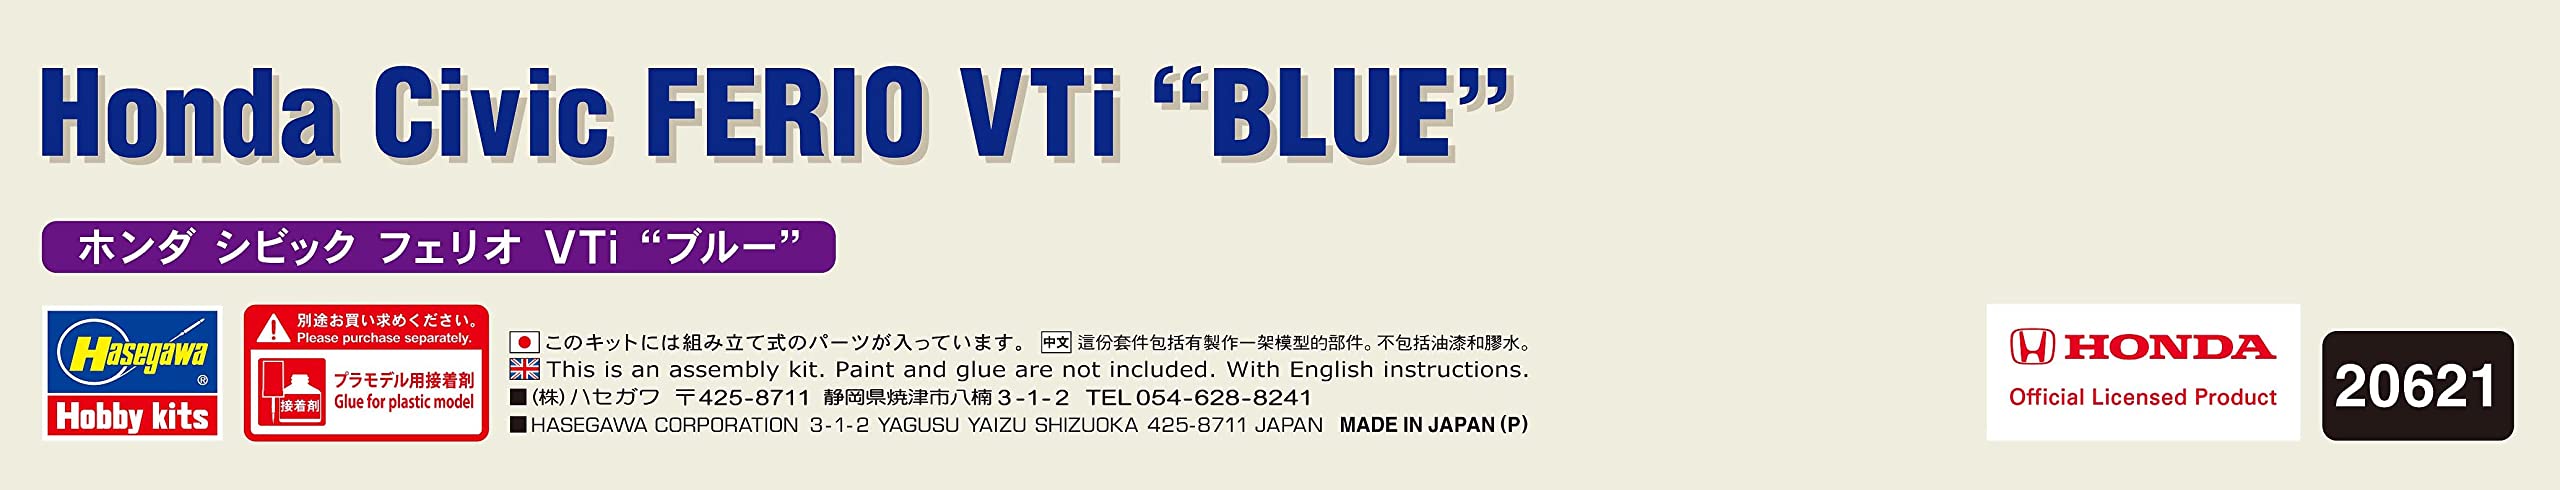 Hasegawa 1/24 Honda Civic FERIO VTi Blue Plastic Model kit 20621 Molding Color_7